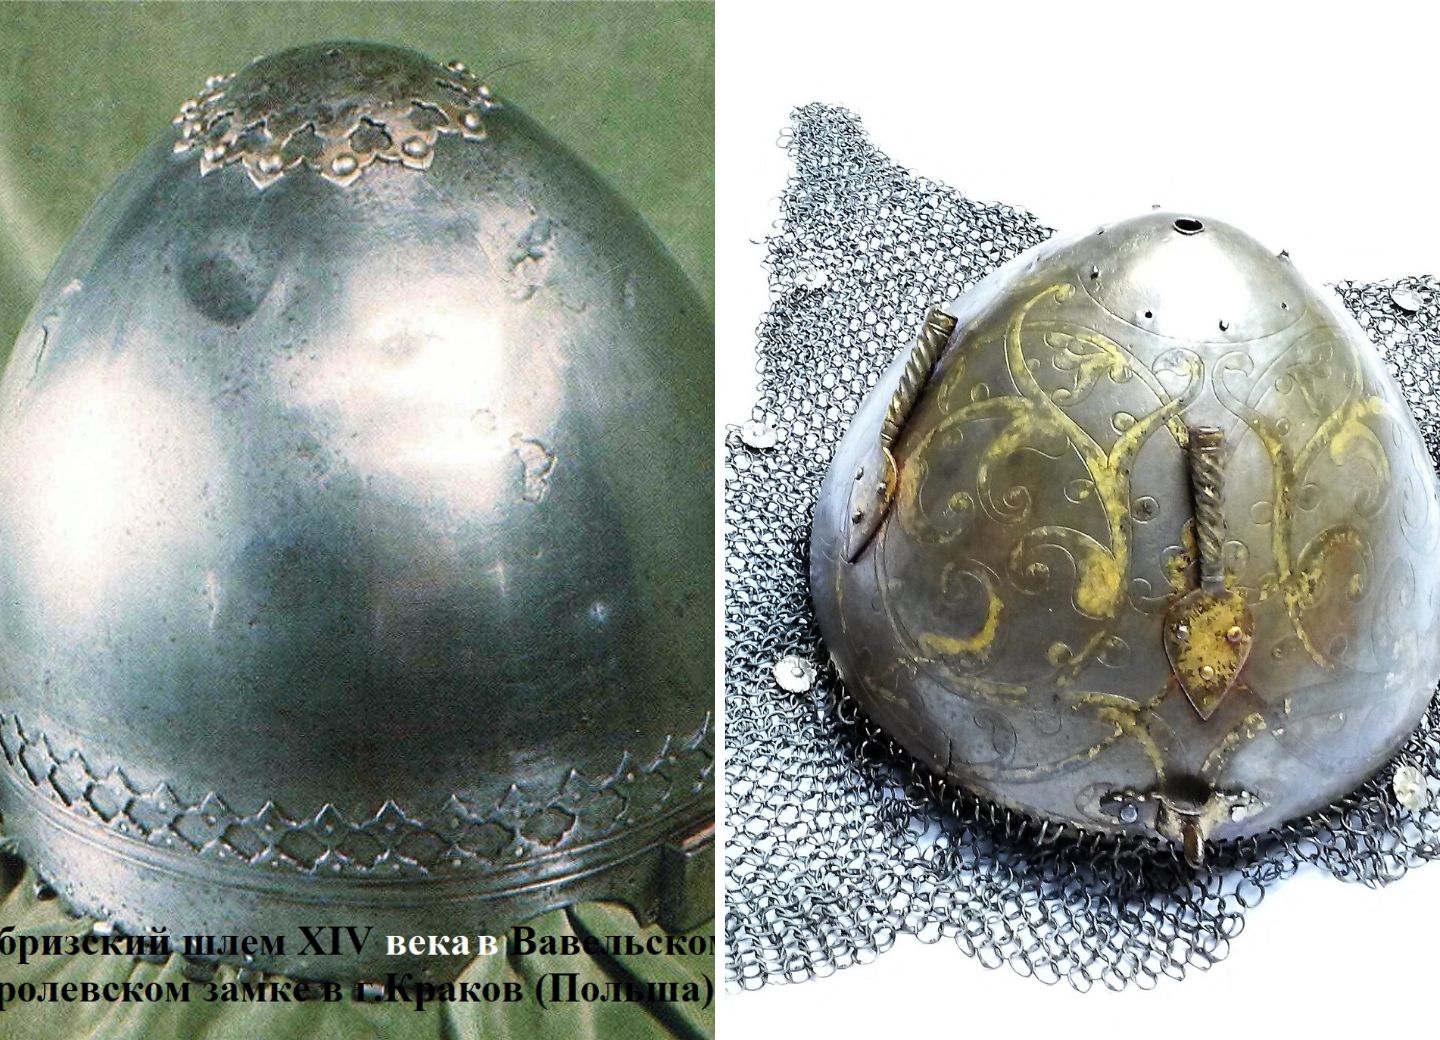 Как азербайджанский шлем XIV века превратился в XVII веке в армянский шлем